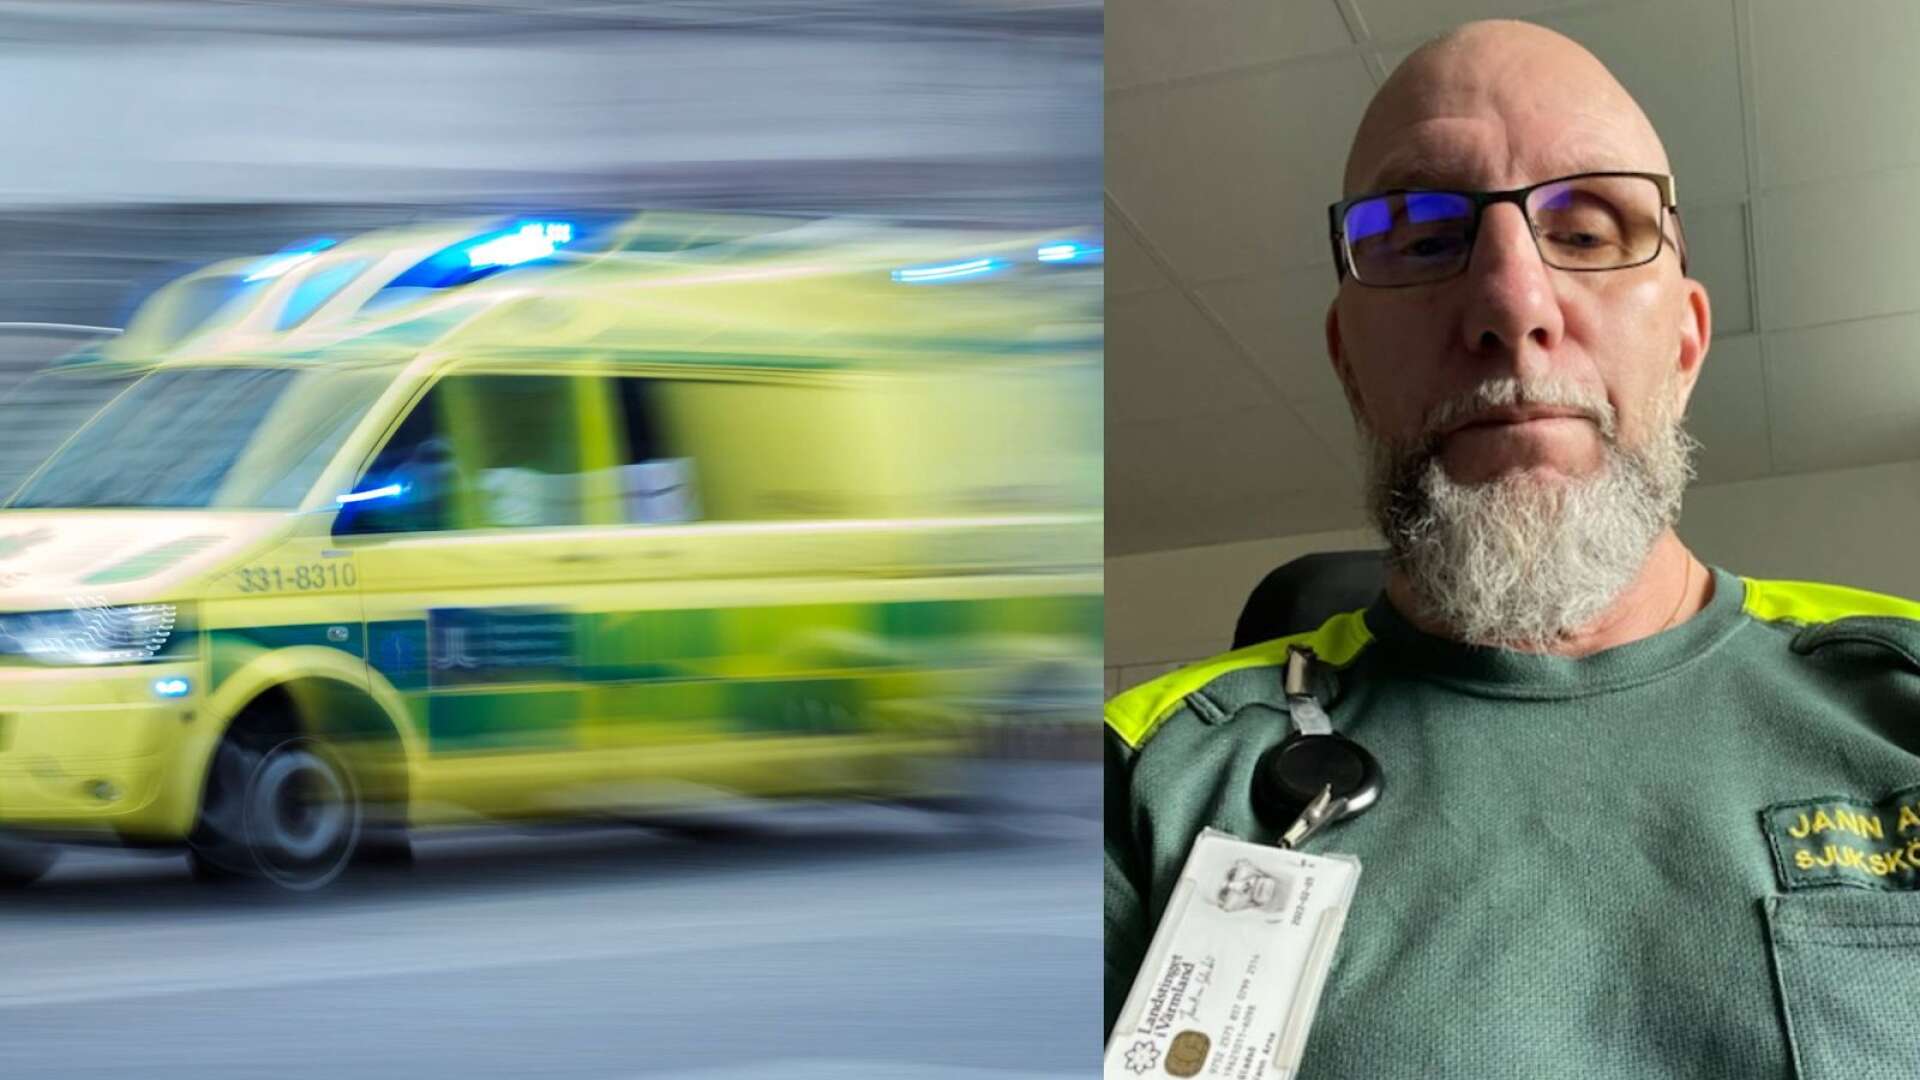 Jann Arne Gladsö, ambulanssjuksköterska i Filipstad, säger att han inte trodde man fick jobba gratis i Sverige. Under hans 24-timmarspass är flera av timmarna jour - trots ordinarie arbetsuppgifter. 